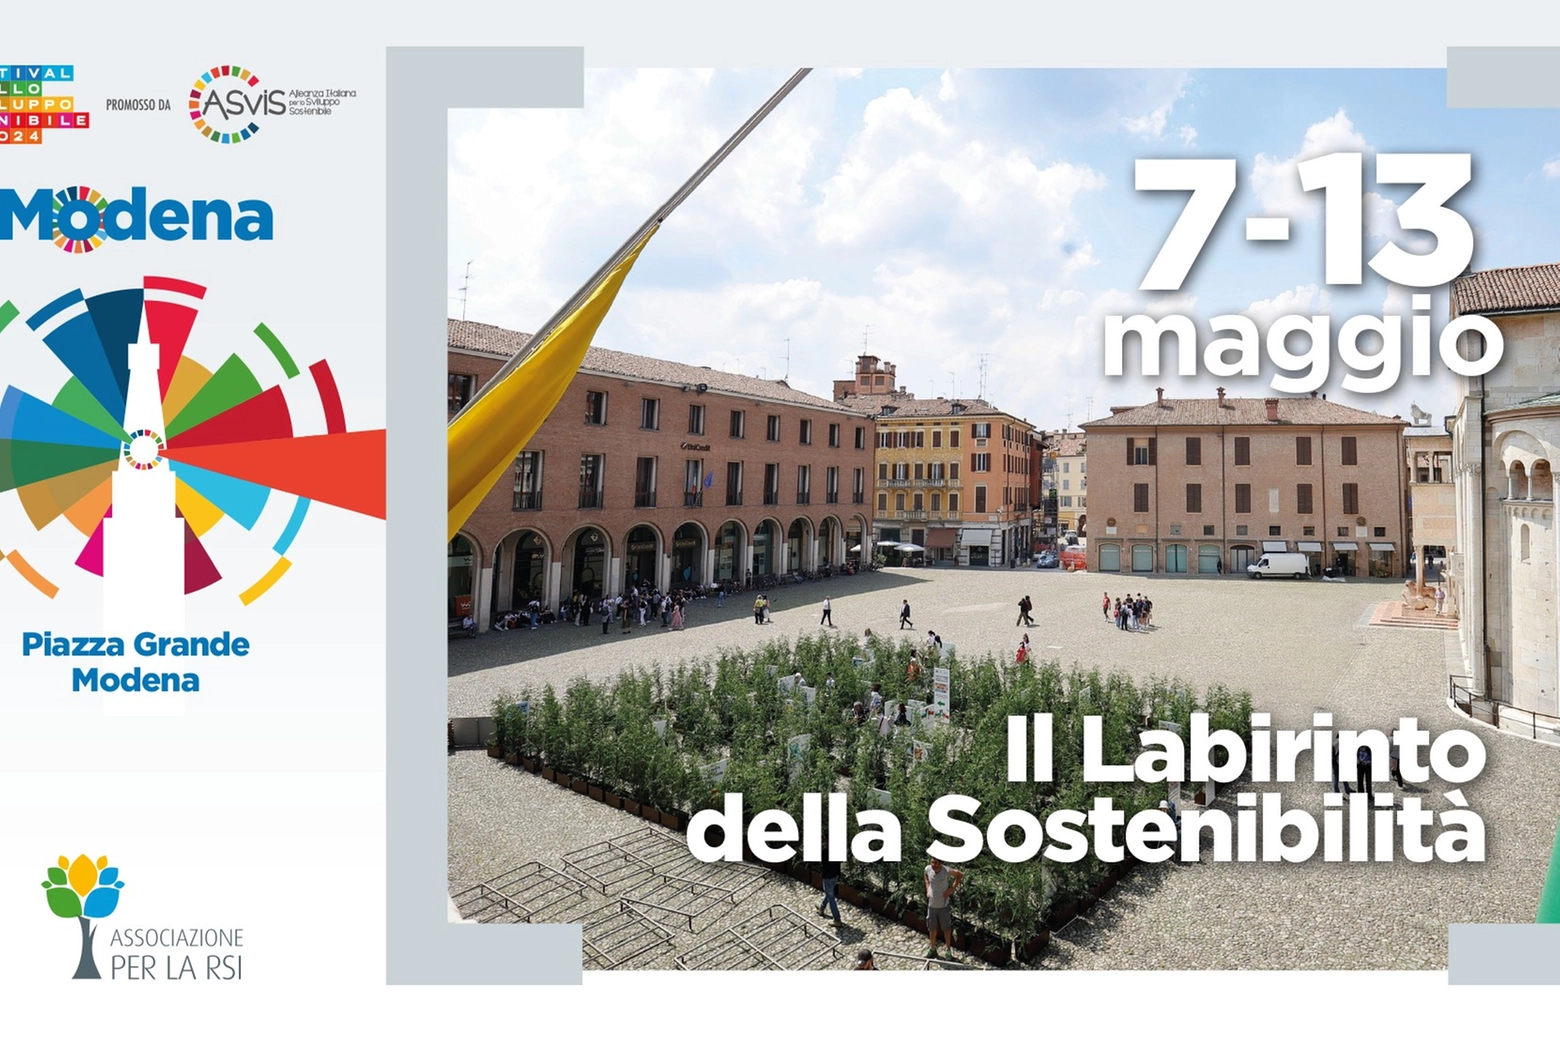 Labirinto della sostenibilità a Modena